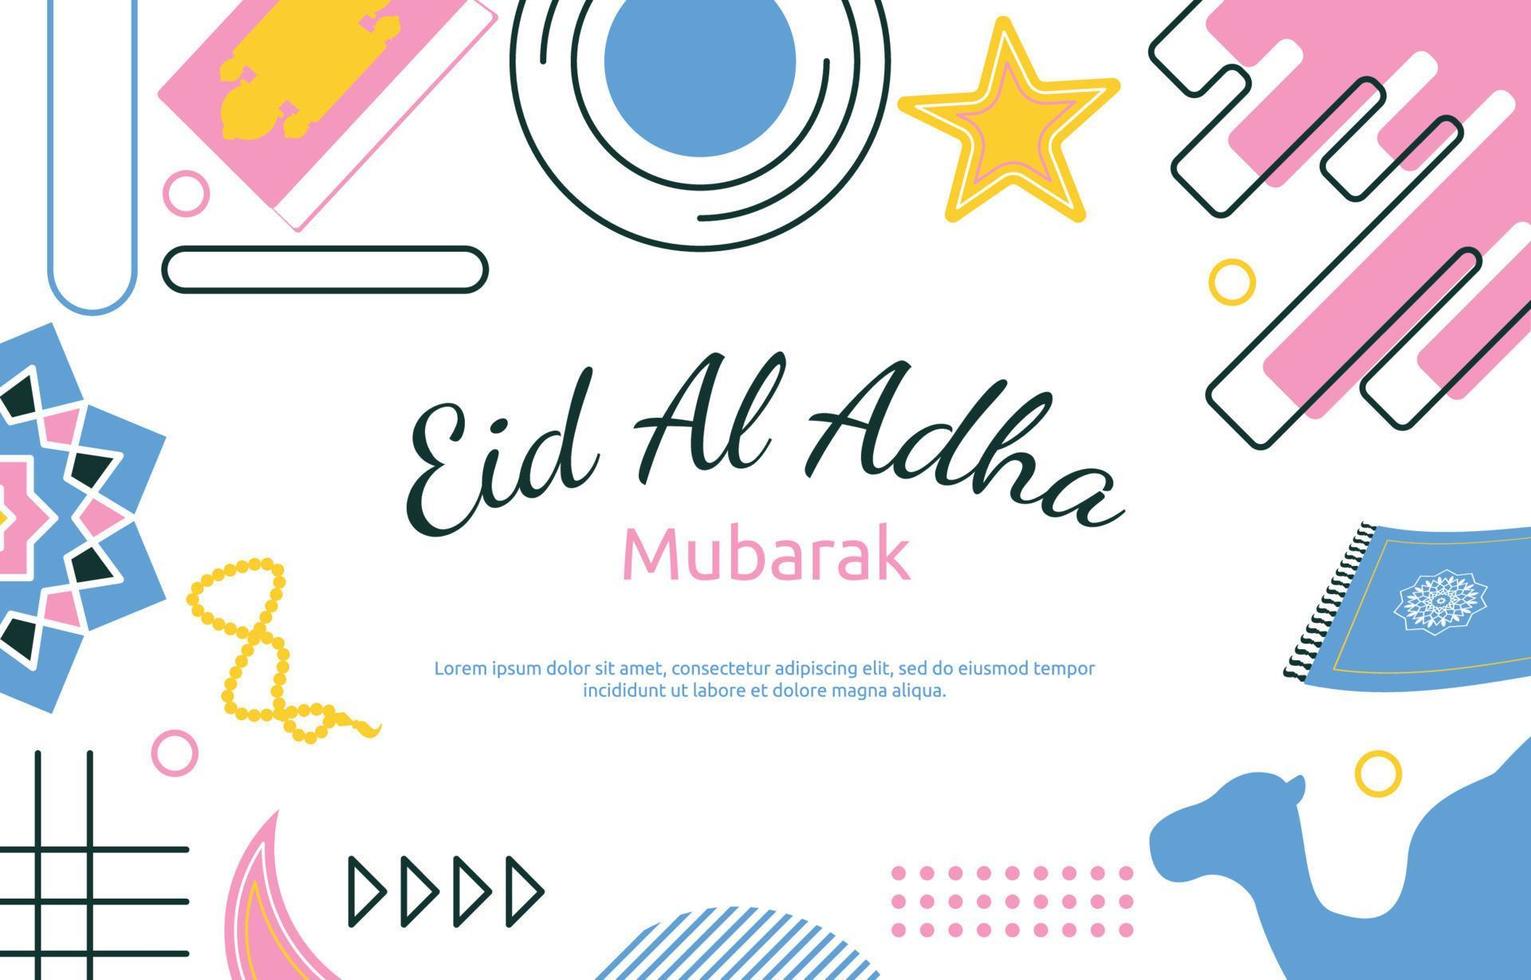 eid adha mubarak événement islamique fond de carte cadeau memphis vecteur